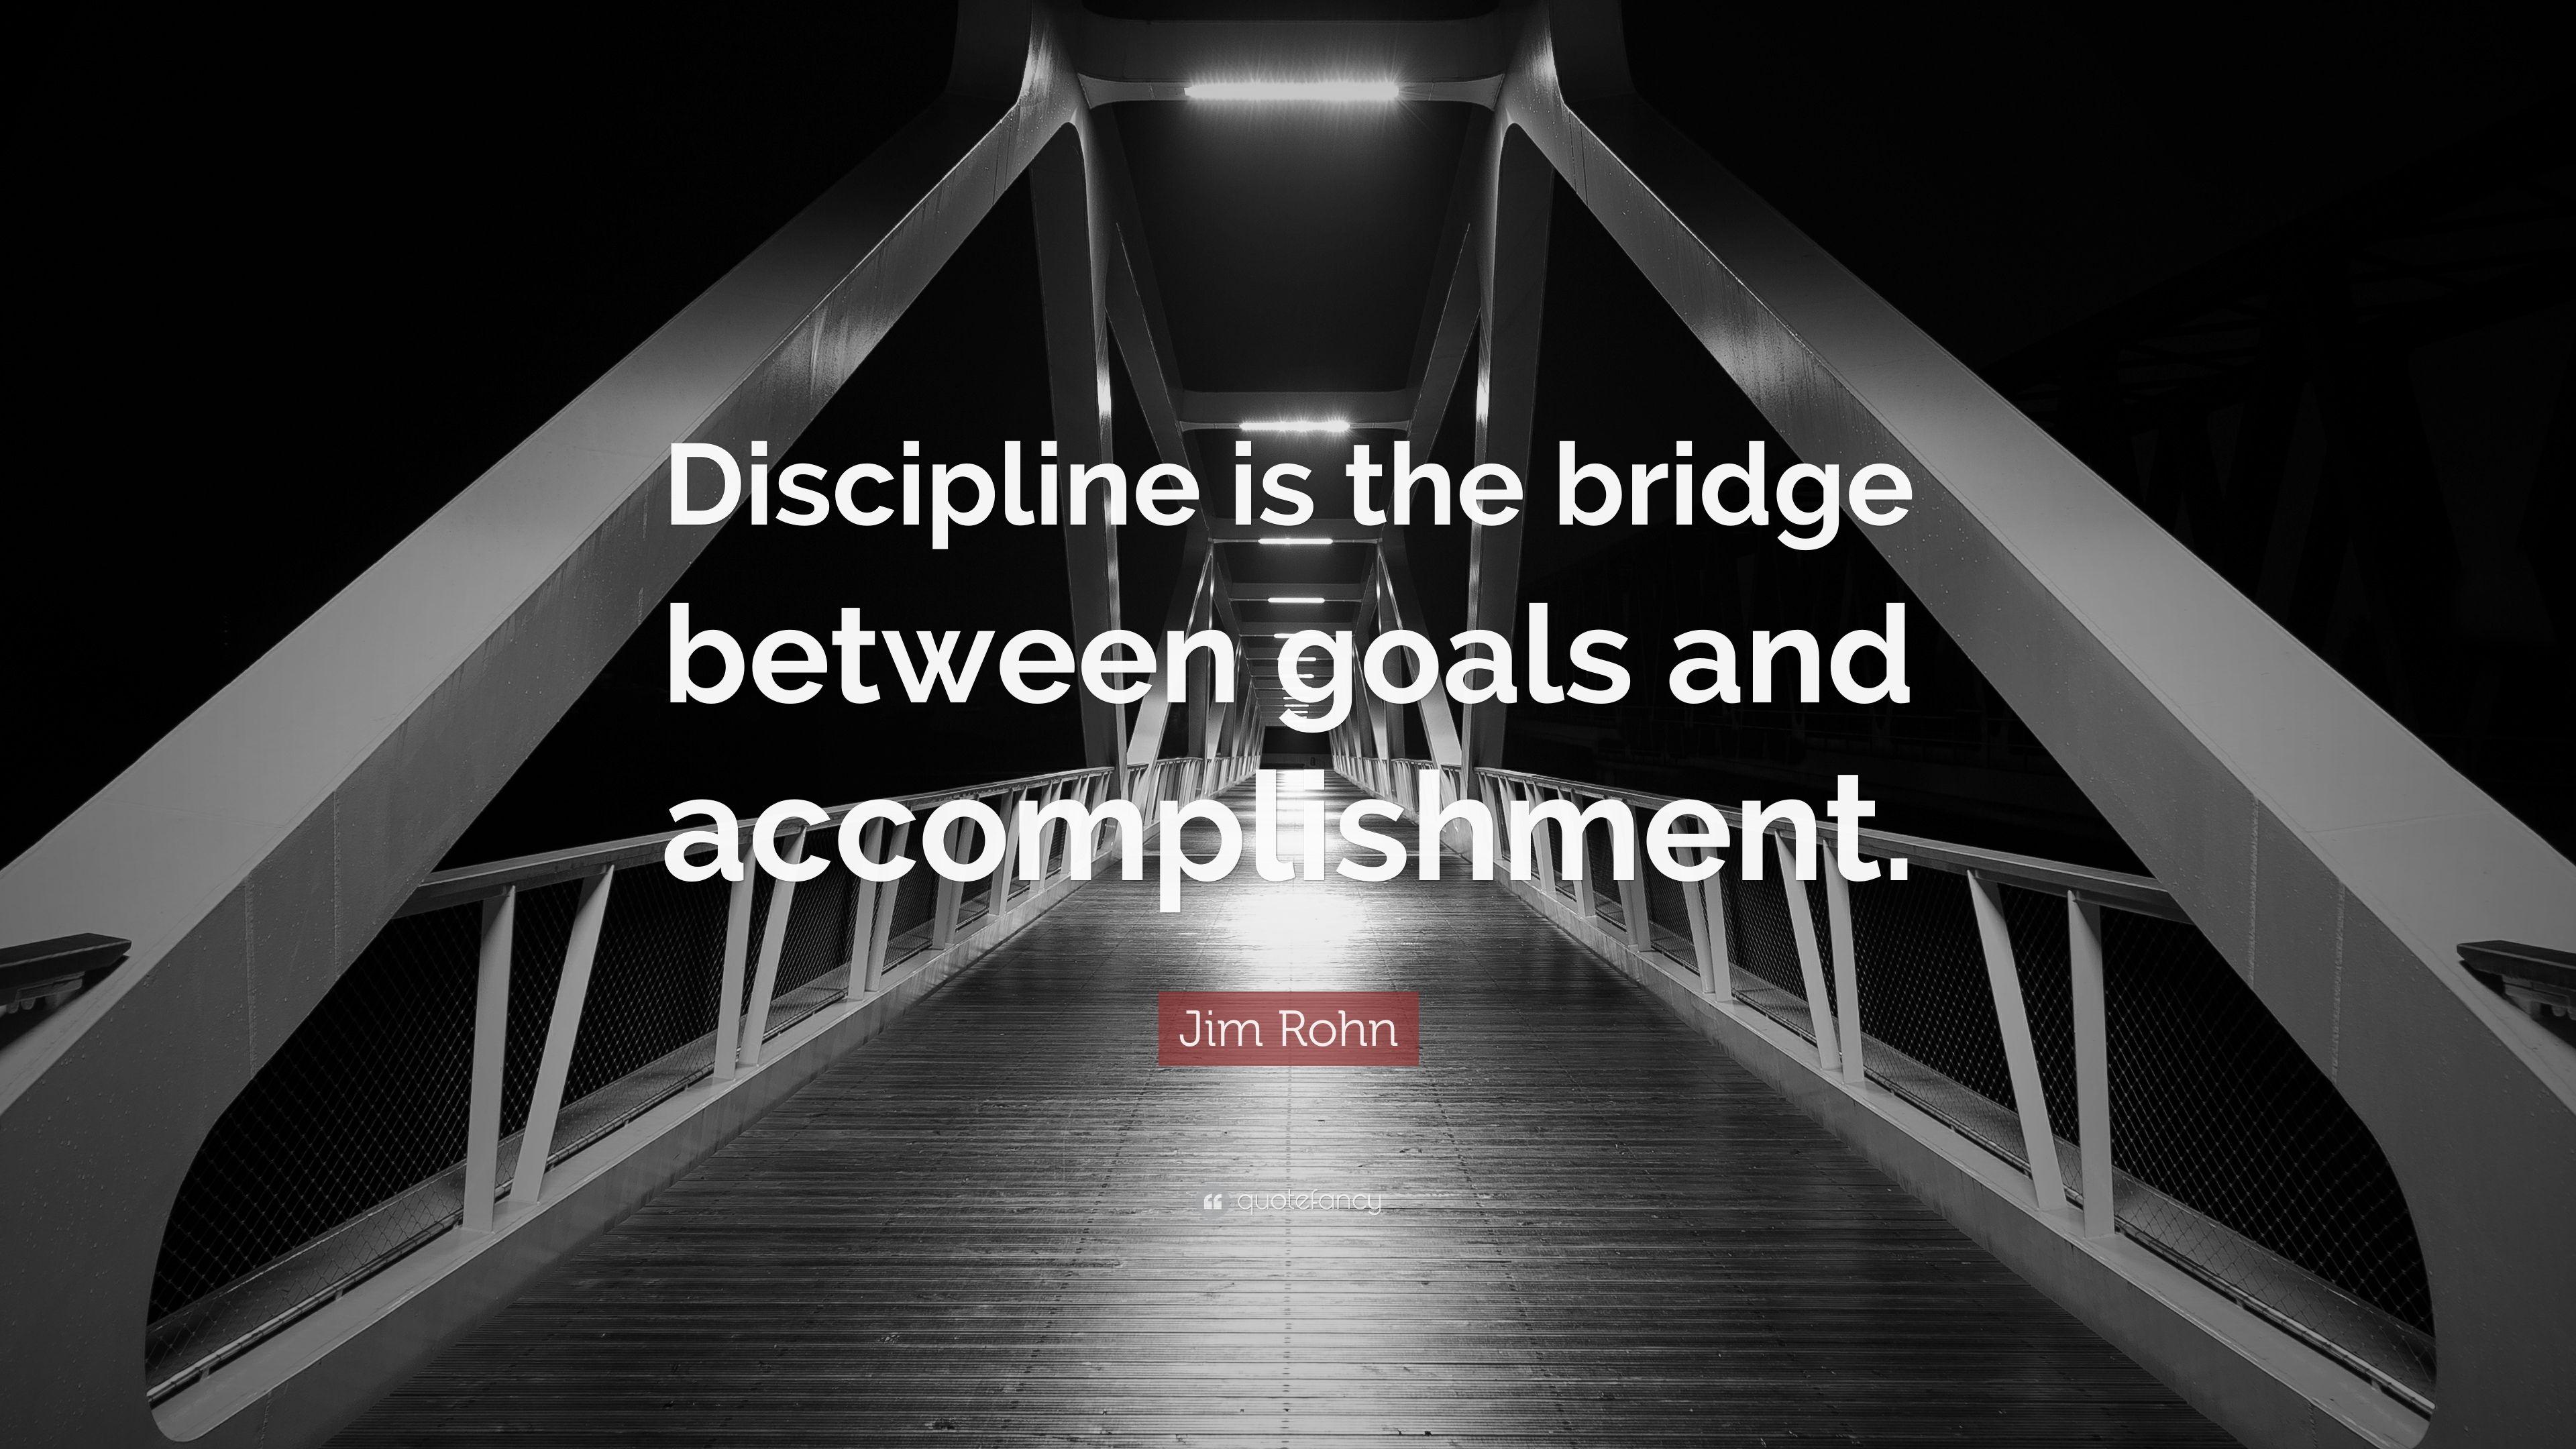 Jim Rohn Quote: “Discipline is the bridge between goals